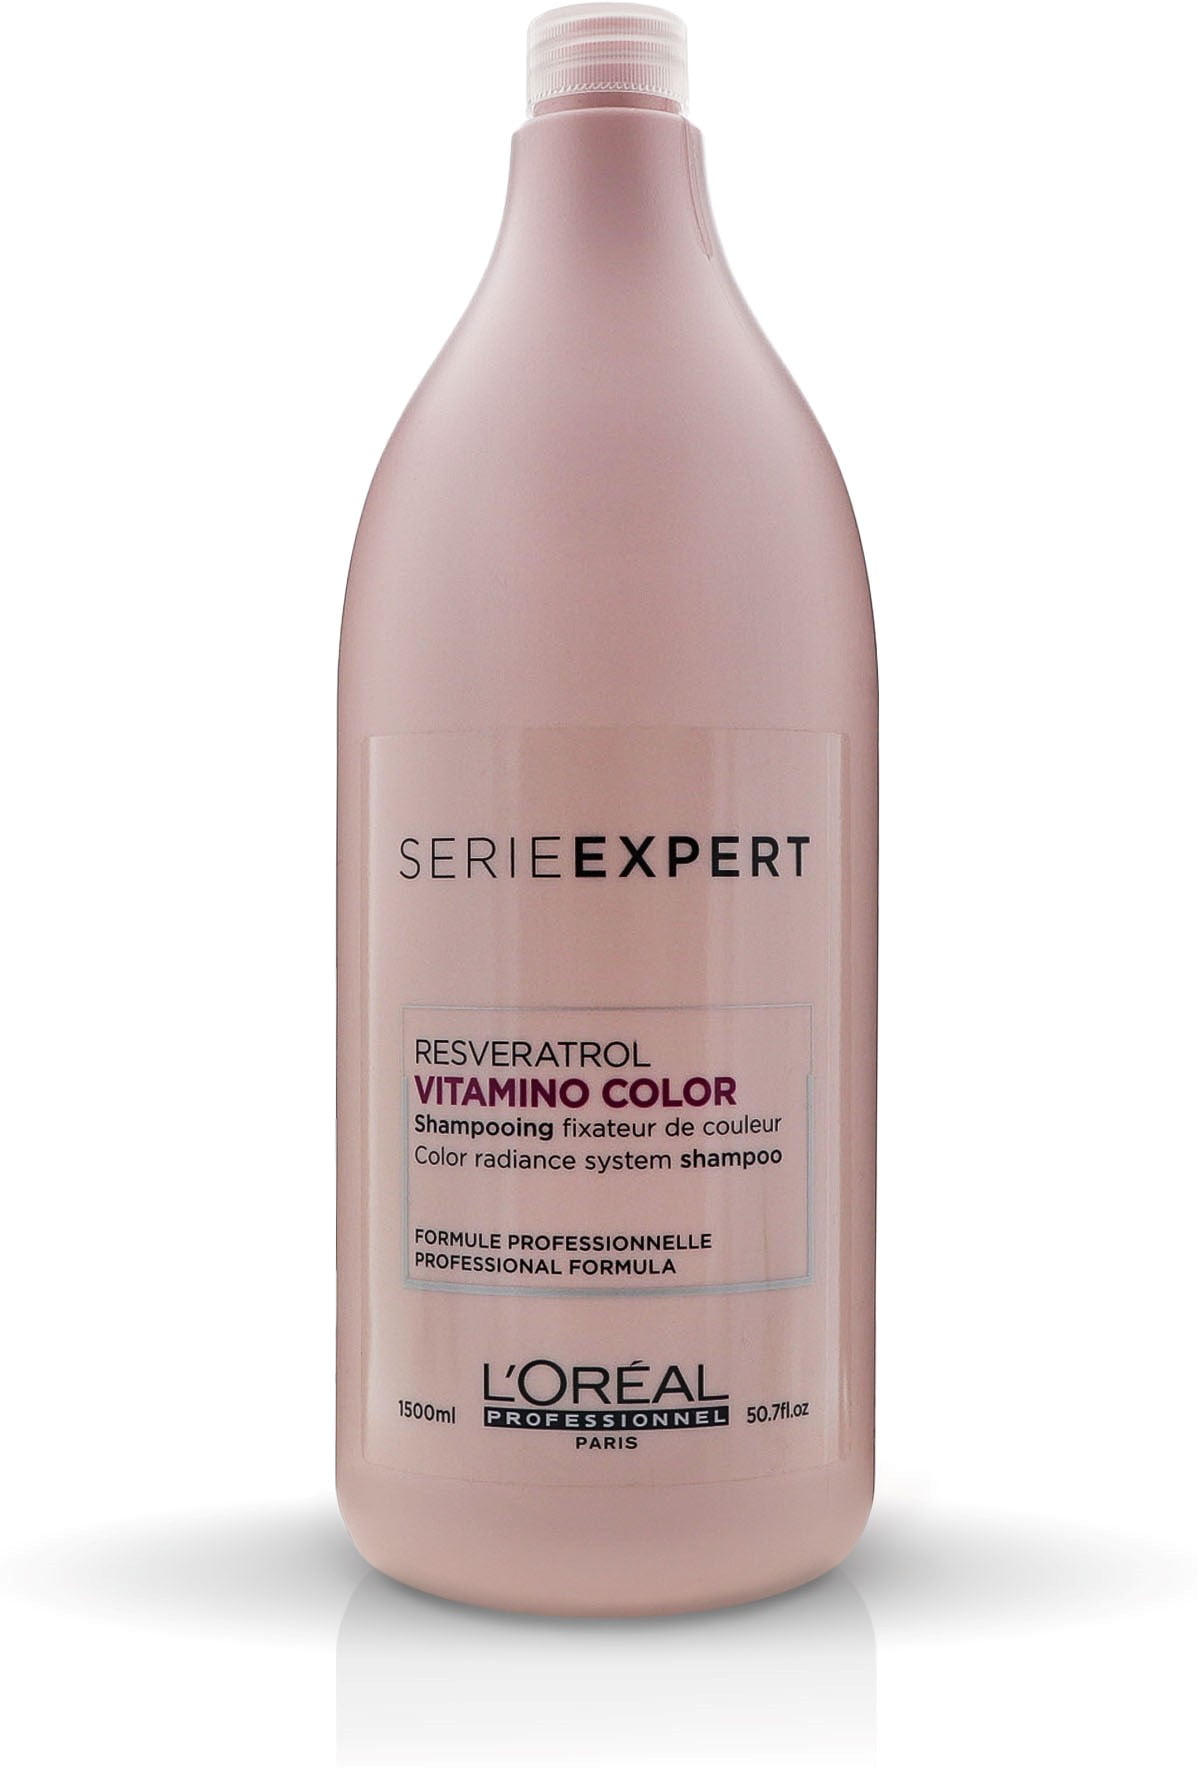 L'Oreal Paris Professionnel Expert Vitamino Color Shampoo, - Walmart.com